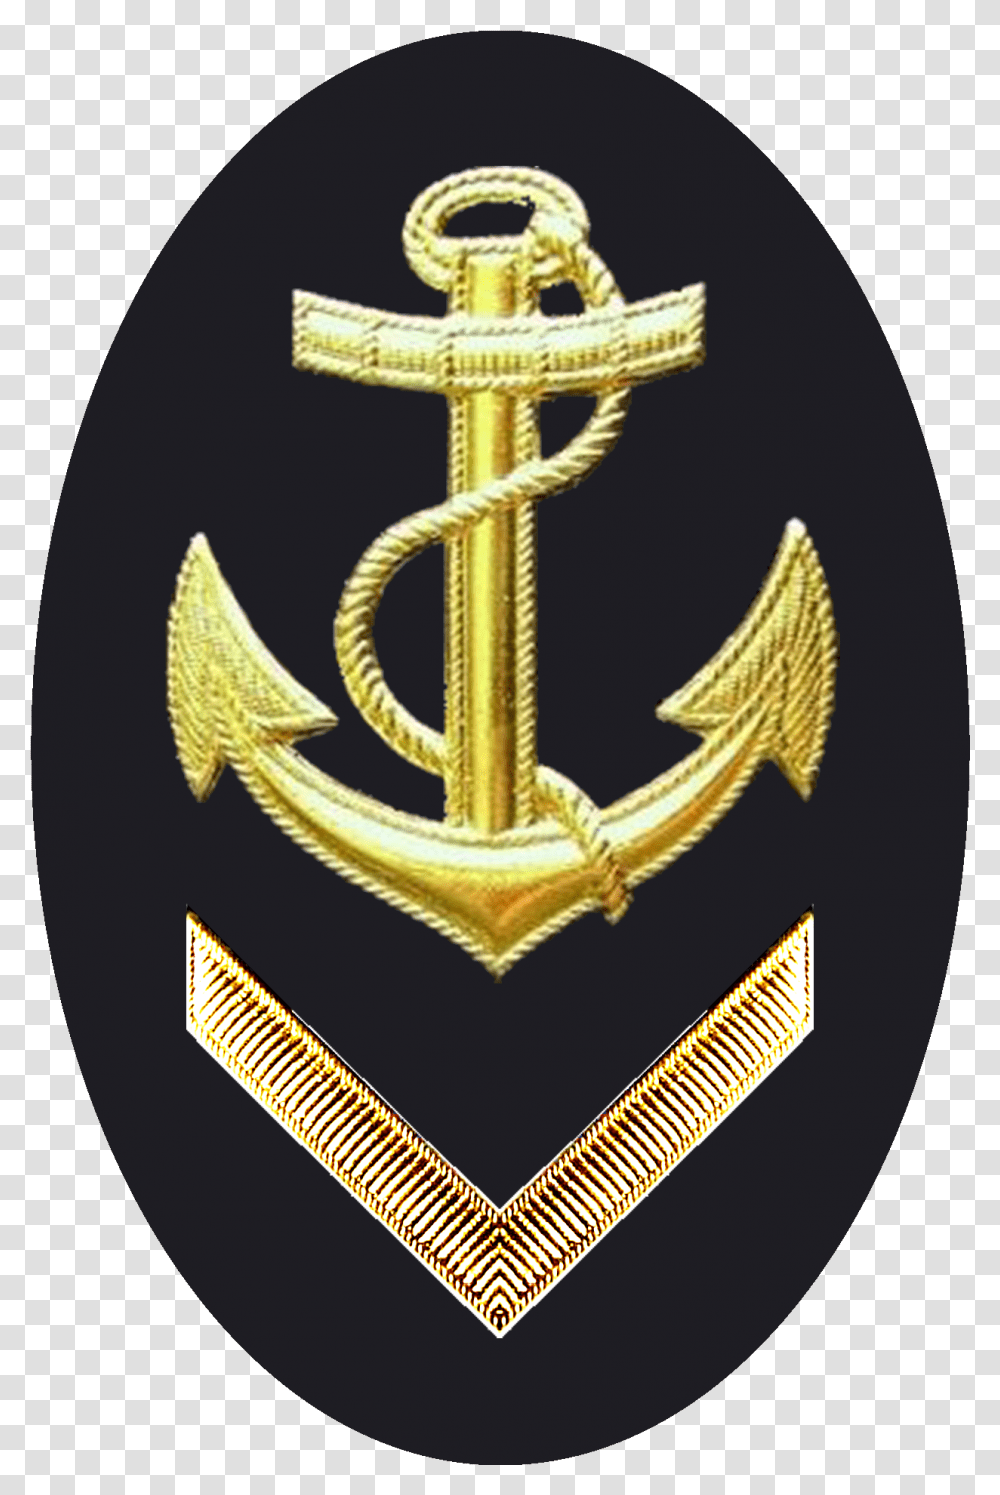 Obermaat Rmel See Emblem, Hook, Cross, Anchor Transparent Png